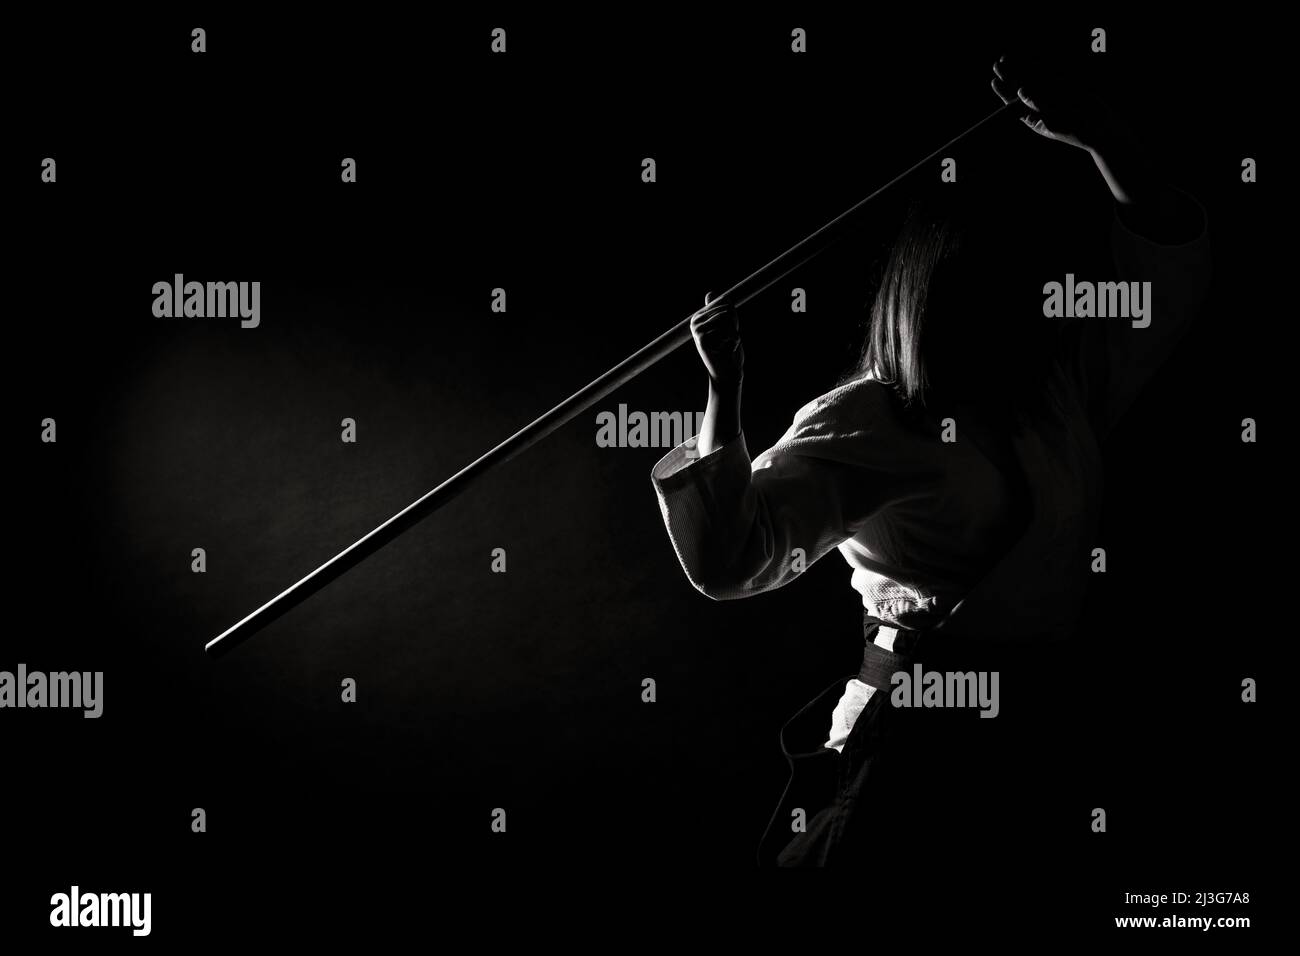 Una ragazza in hakama nero in piedi in posa di combattimento con spada di legno bokken su sfondo scuro. Profondità di campo poco profonda. Bianco e nero Foto Stock